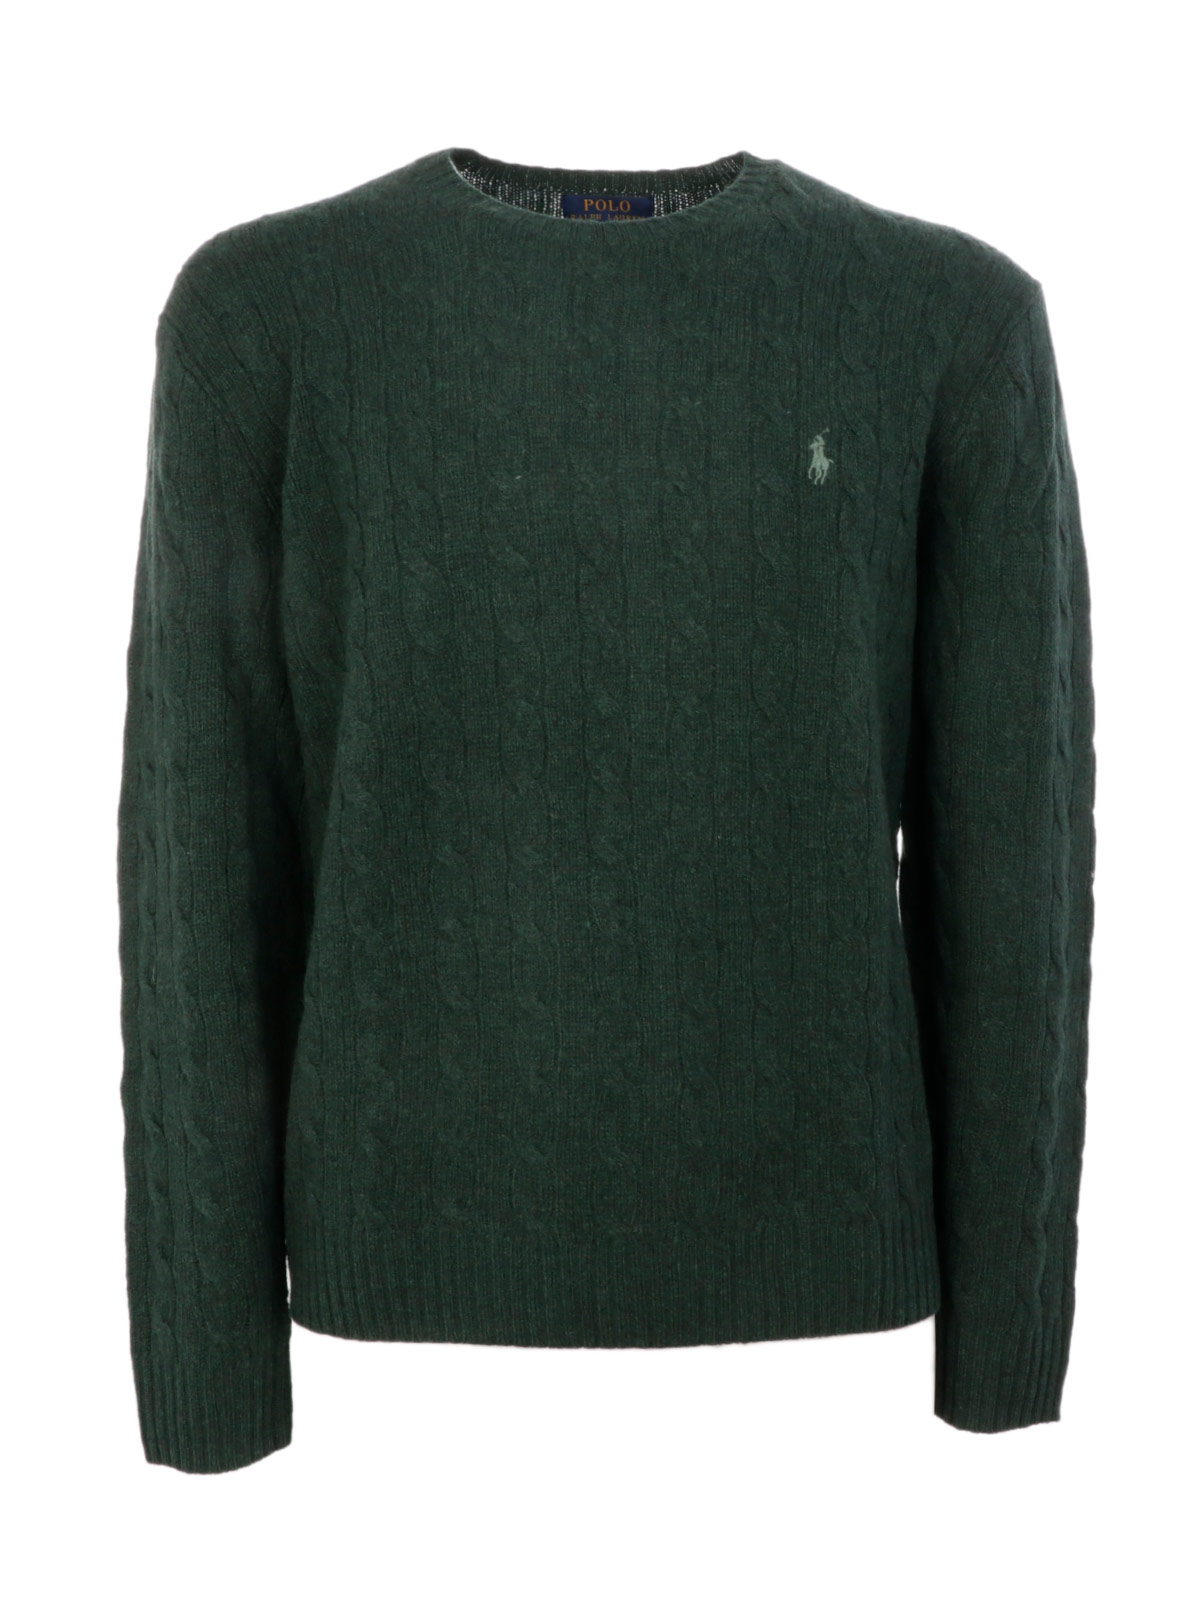 polo ralph lauren green sweatshirt